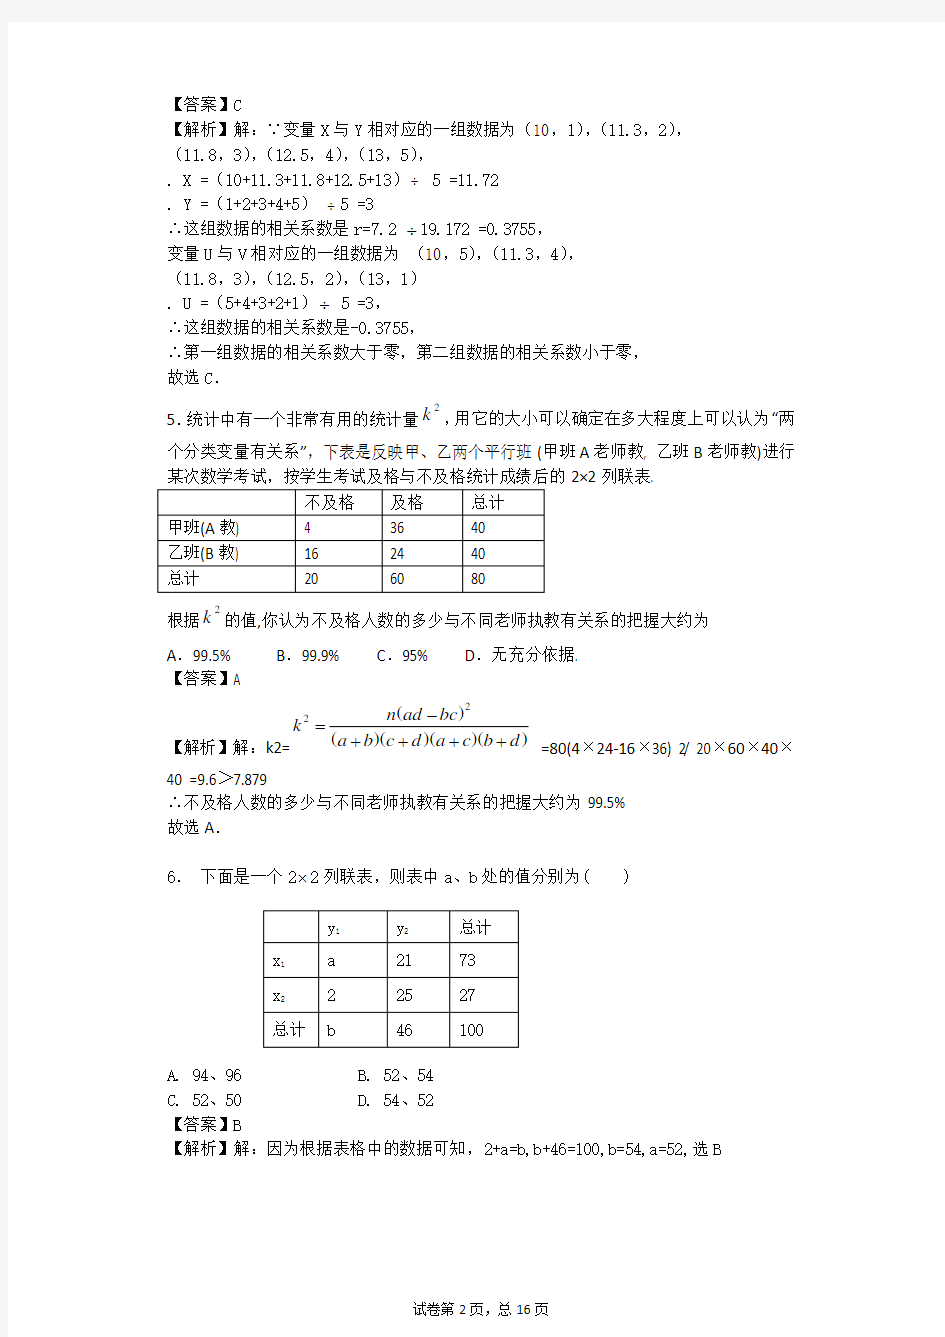 高中数学选修1-2第一章统计案例测试题带详细解答